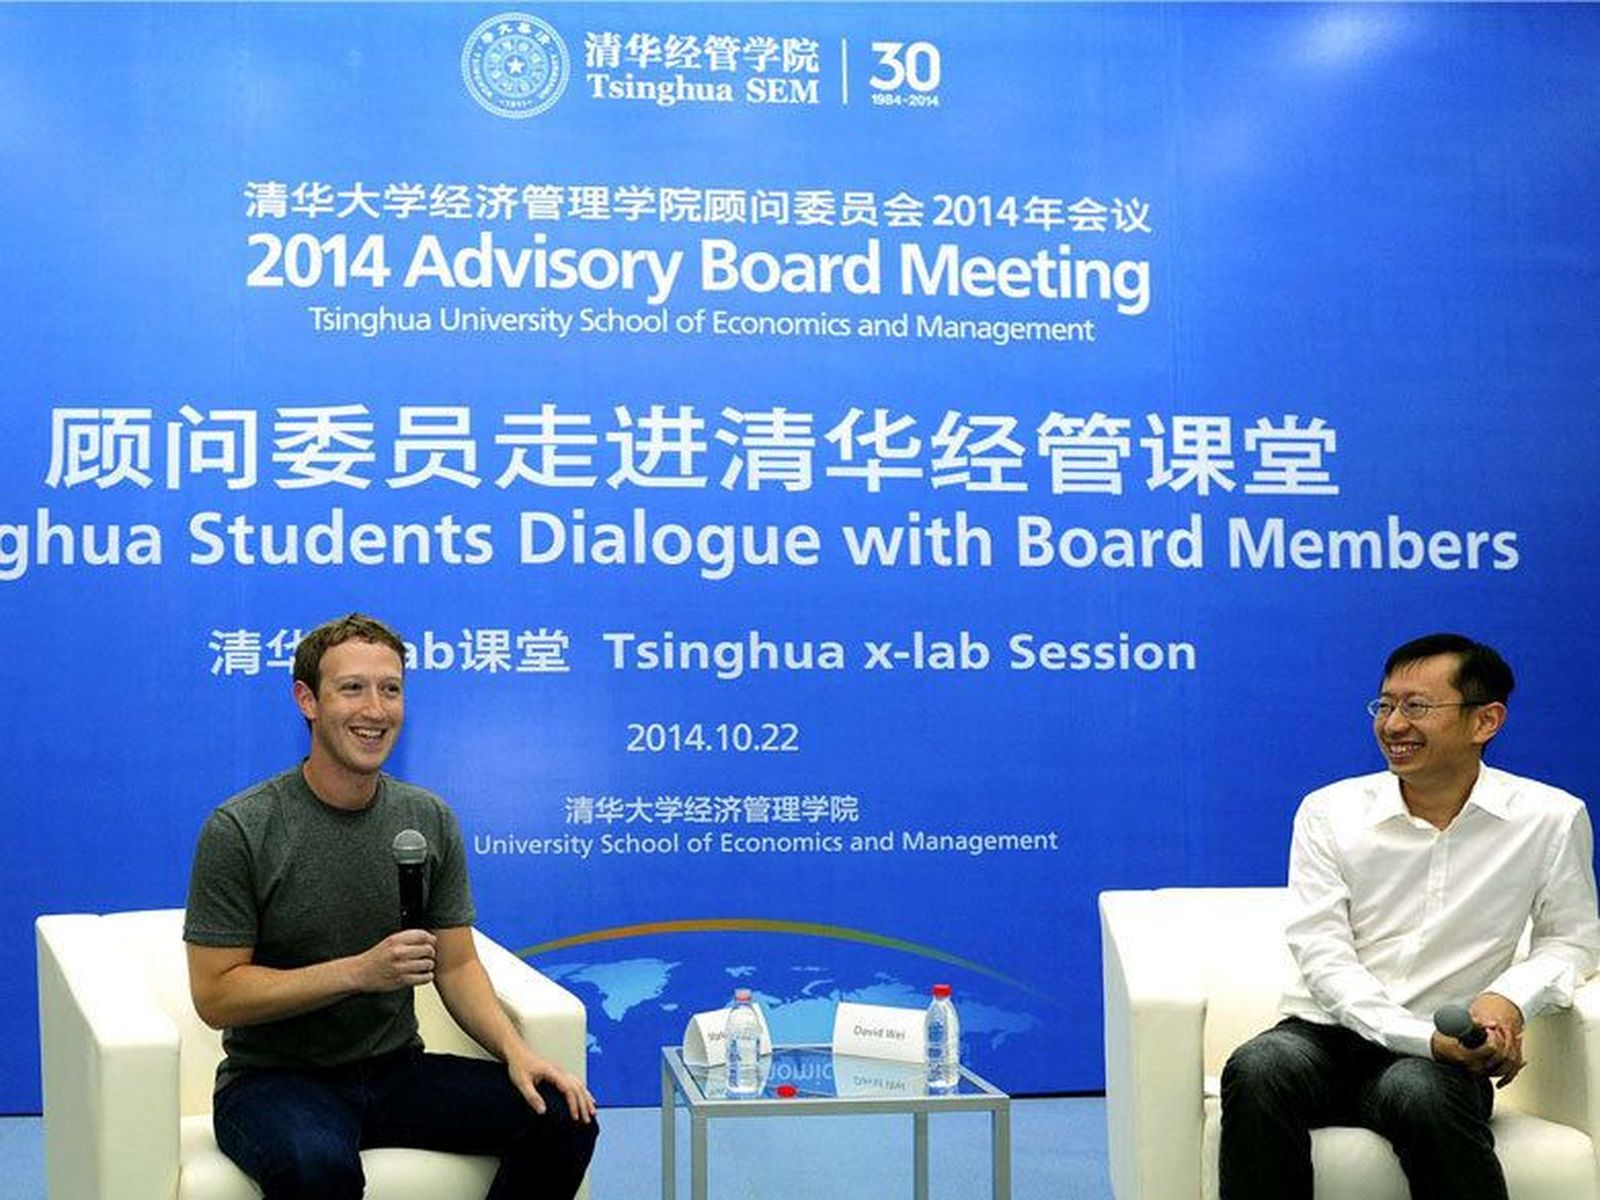 Марк Цукерберг вёл переговоры с китайскими властями, чтобы его компания вышла на китайский рынок. На фото — Марк Цукерберг на встрече со студентами Университета Цинхуа / Фото: grazia.fr